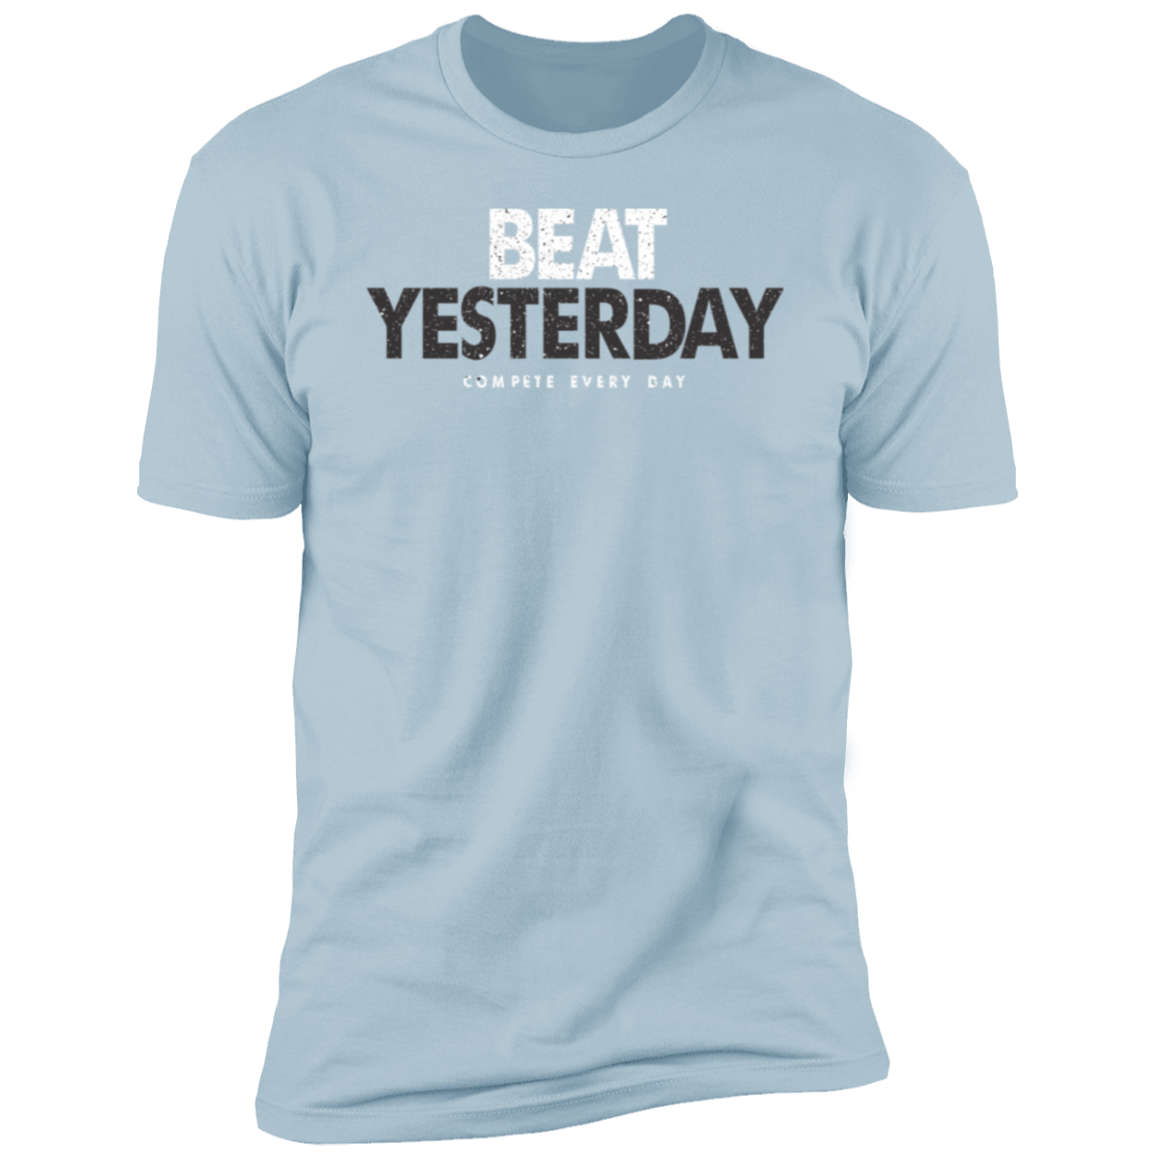 Beat Yesterday Premium Short Sleeve T-Shirt - Game Day Getup